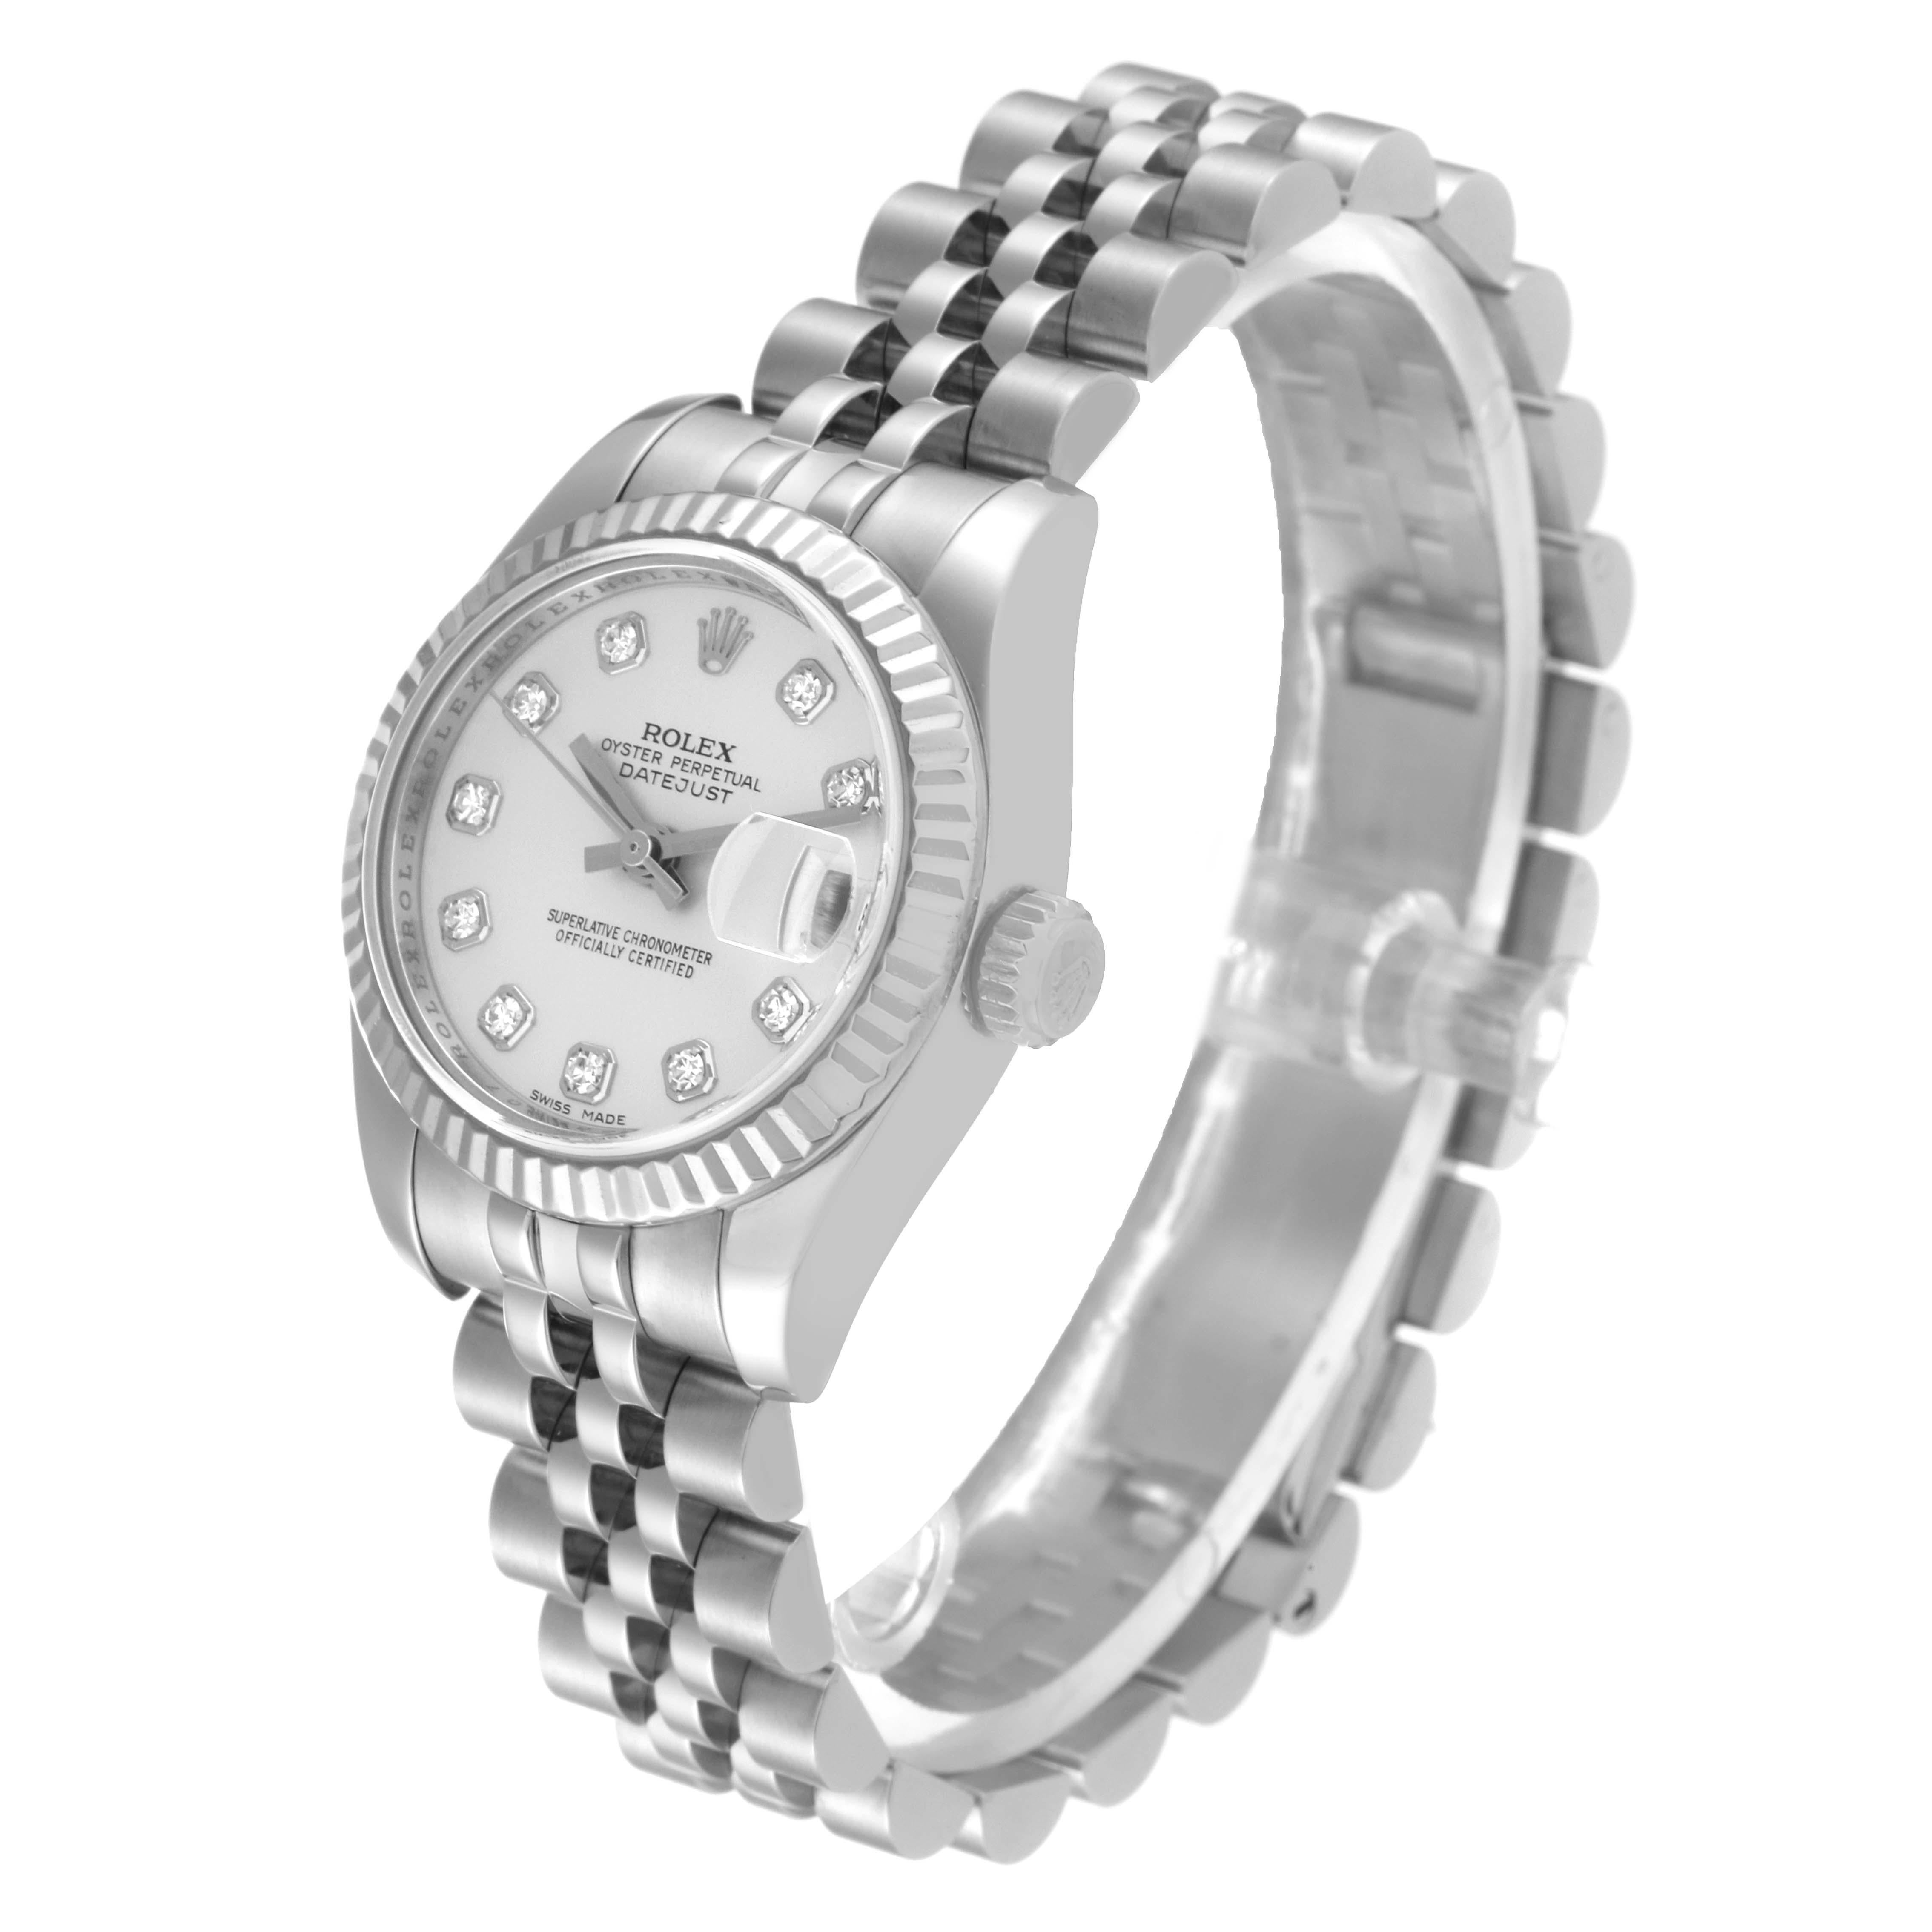 Women's Rolex Datejust Steel White Gold Diamond Dial Ladies Watch 179174